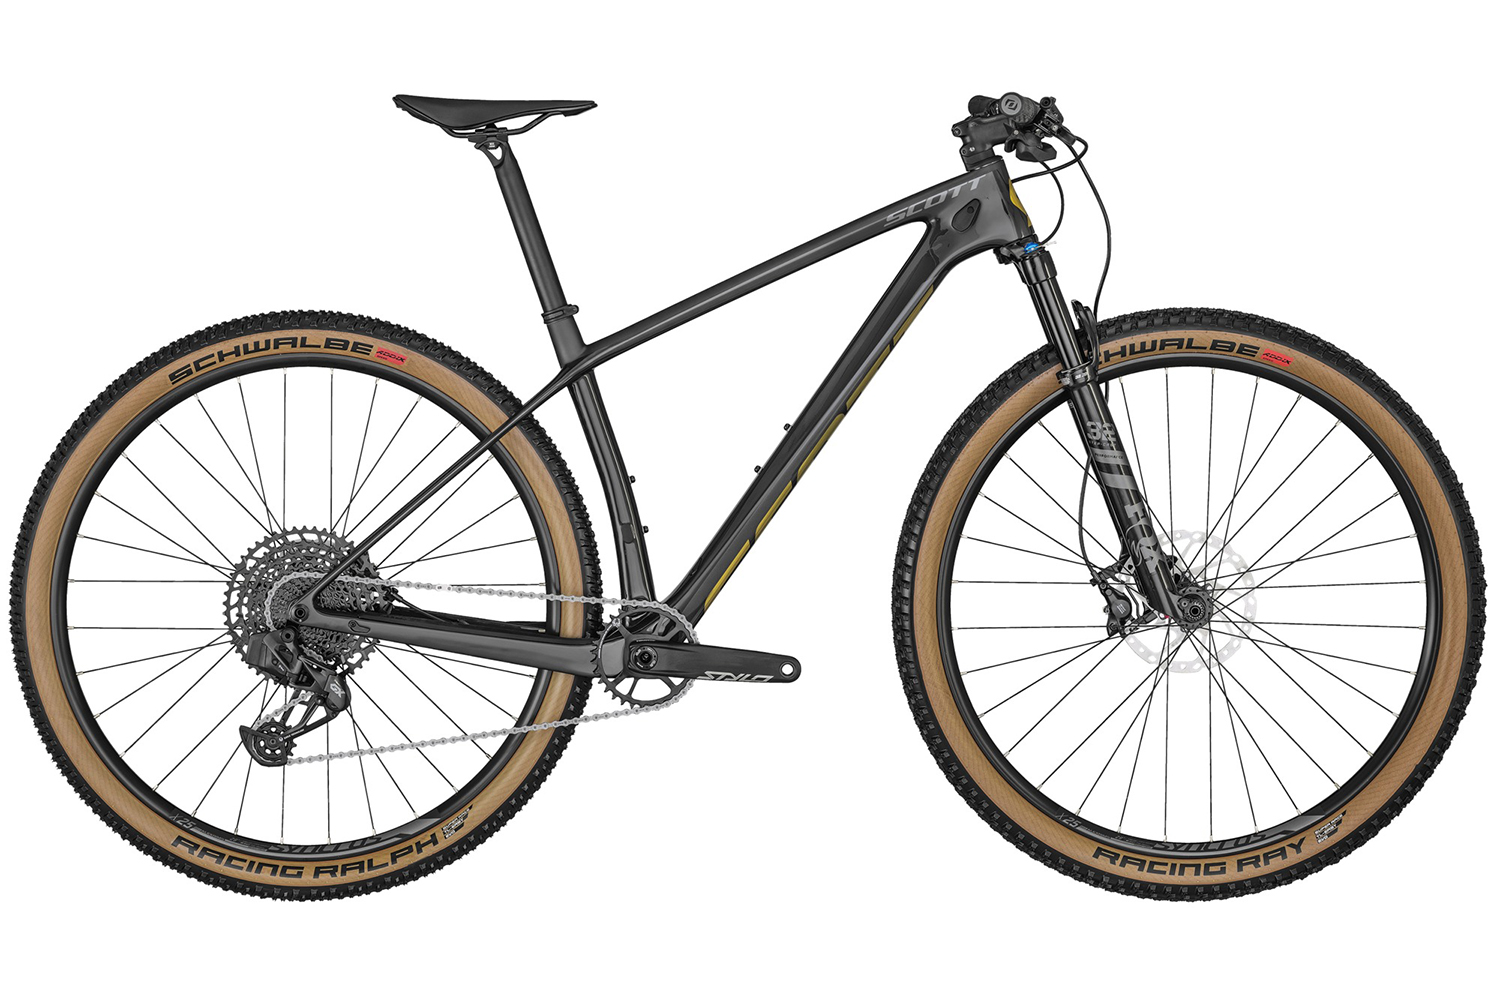  Отзывы о Горном велосипеде Scott Scale 910 AXS 2022